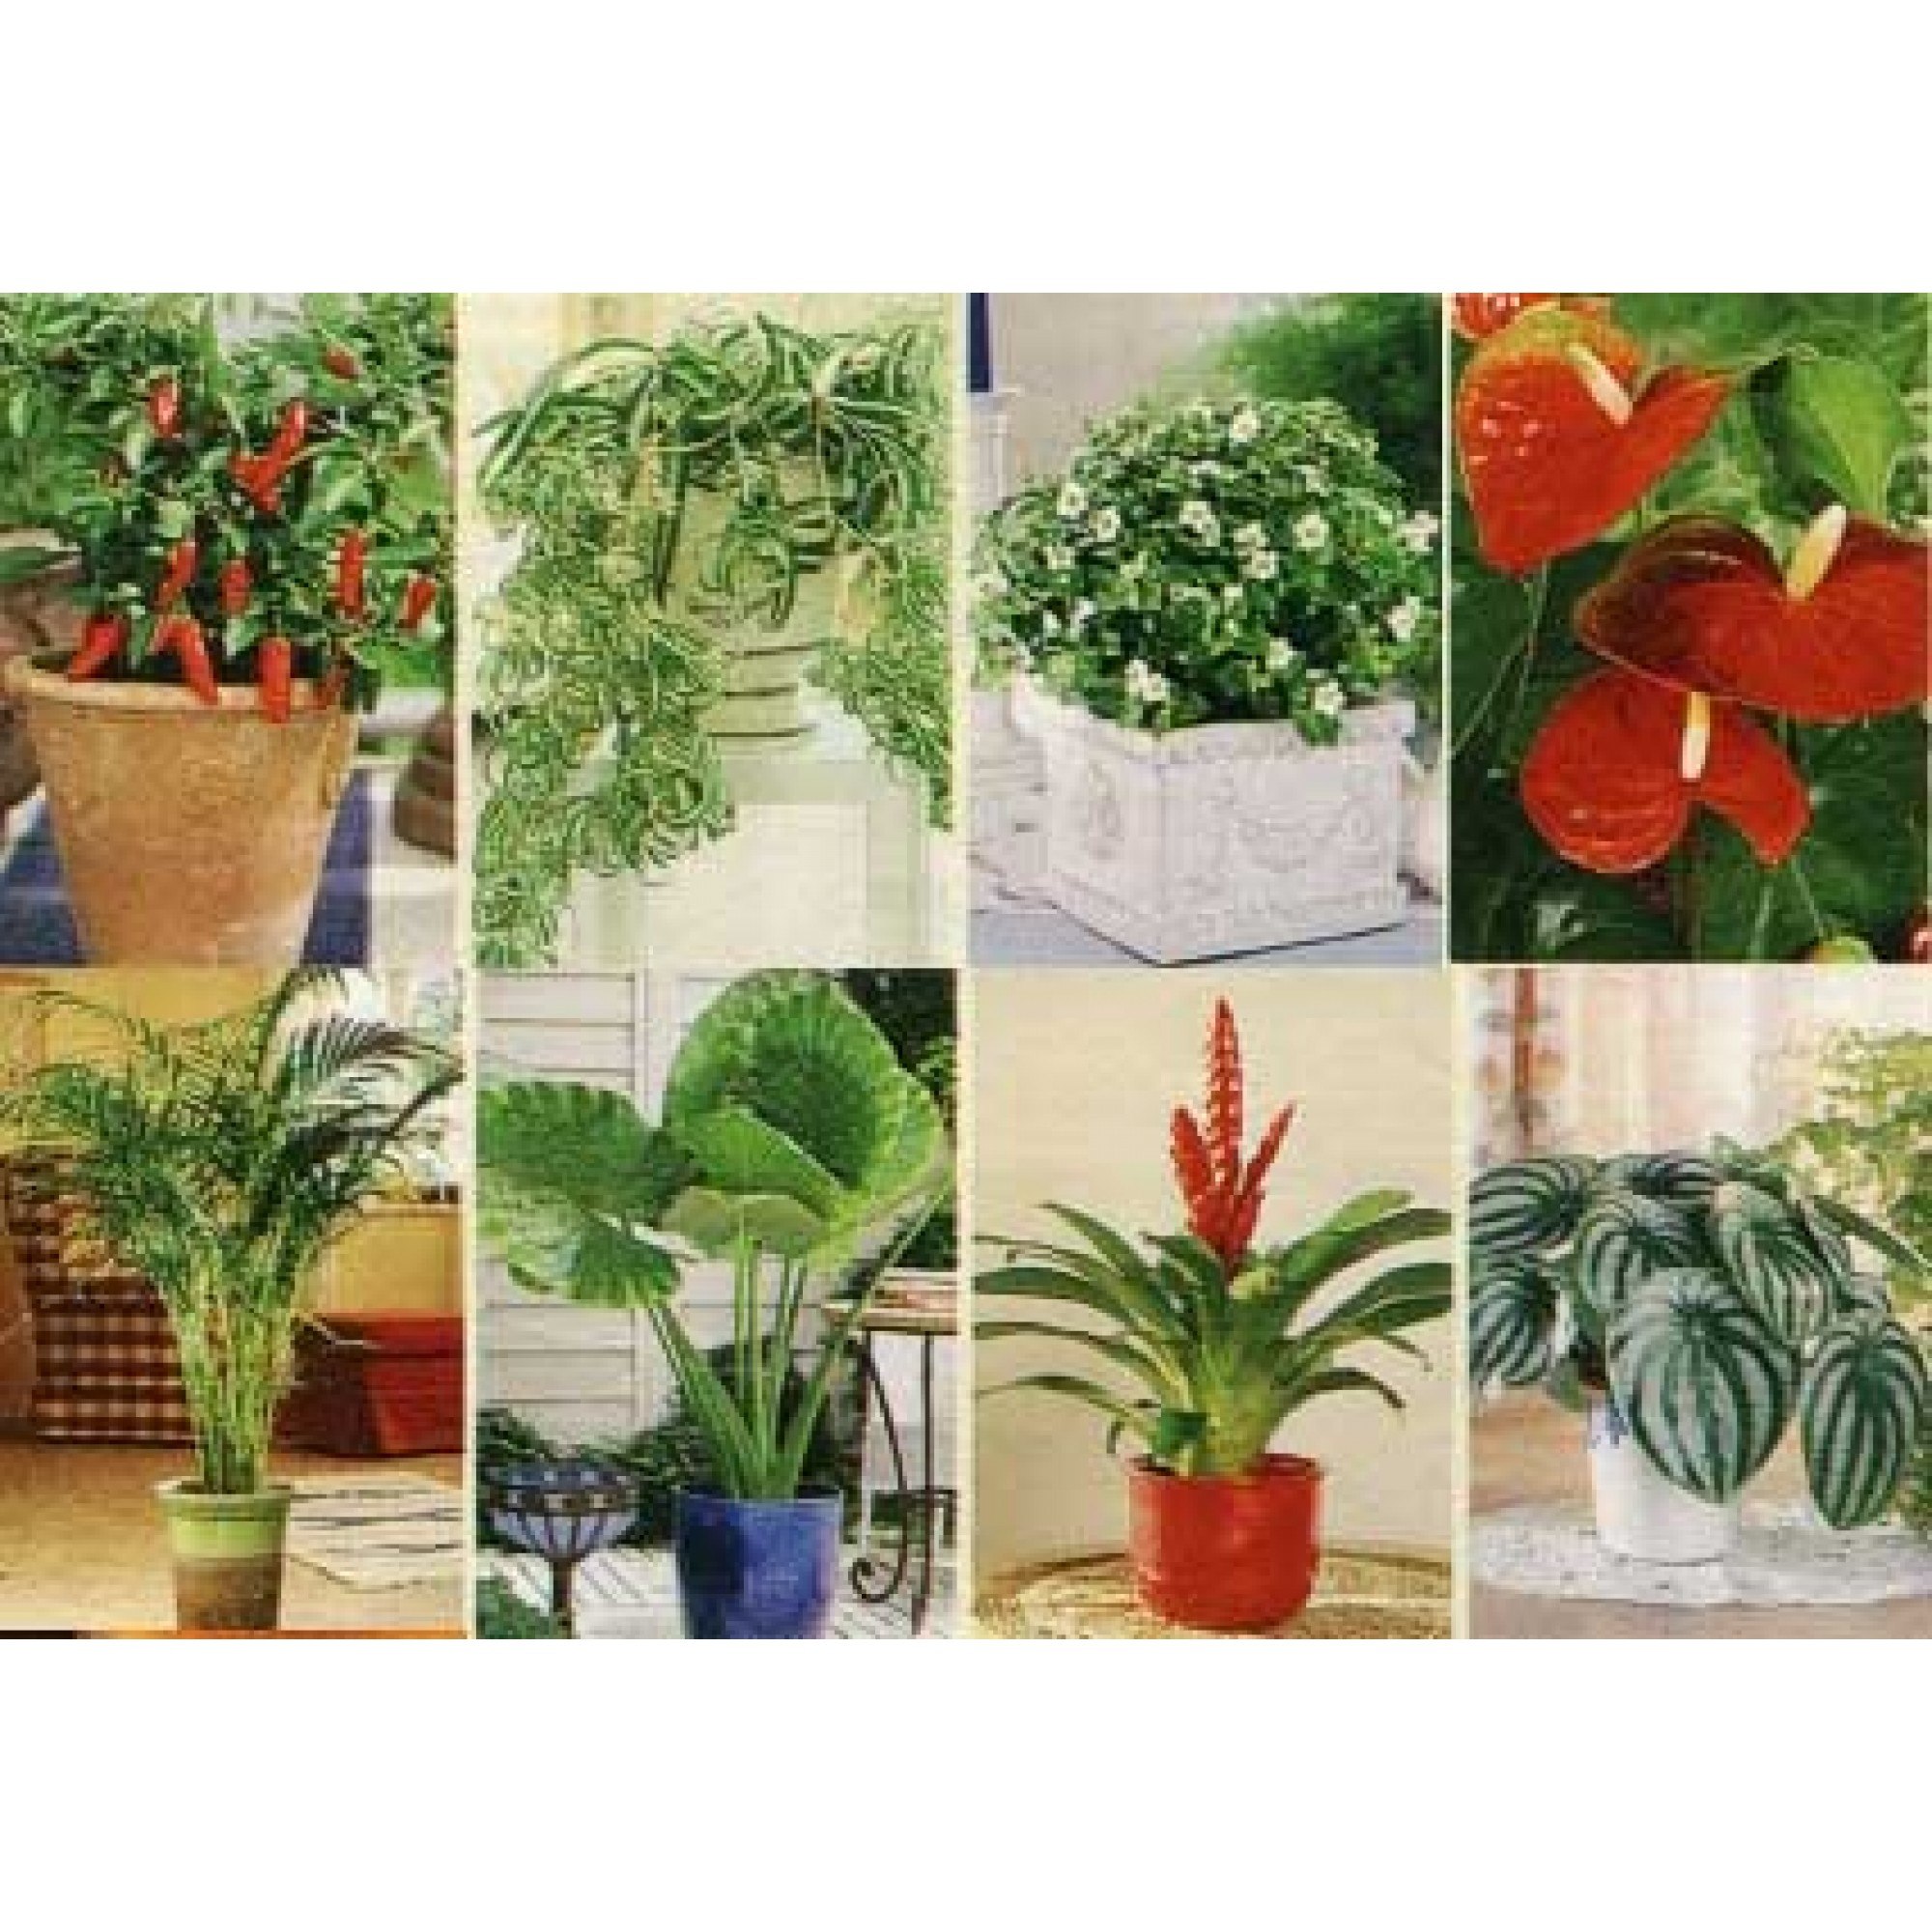 аллергенные комнатные растения фото и названия